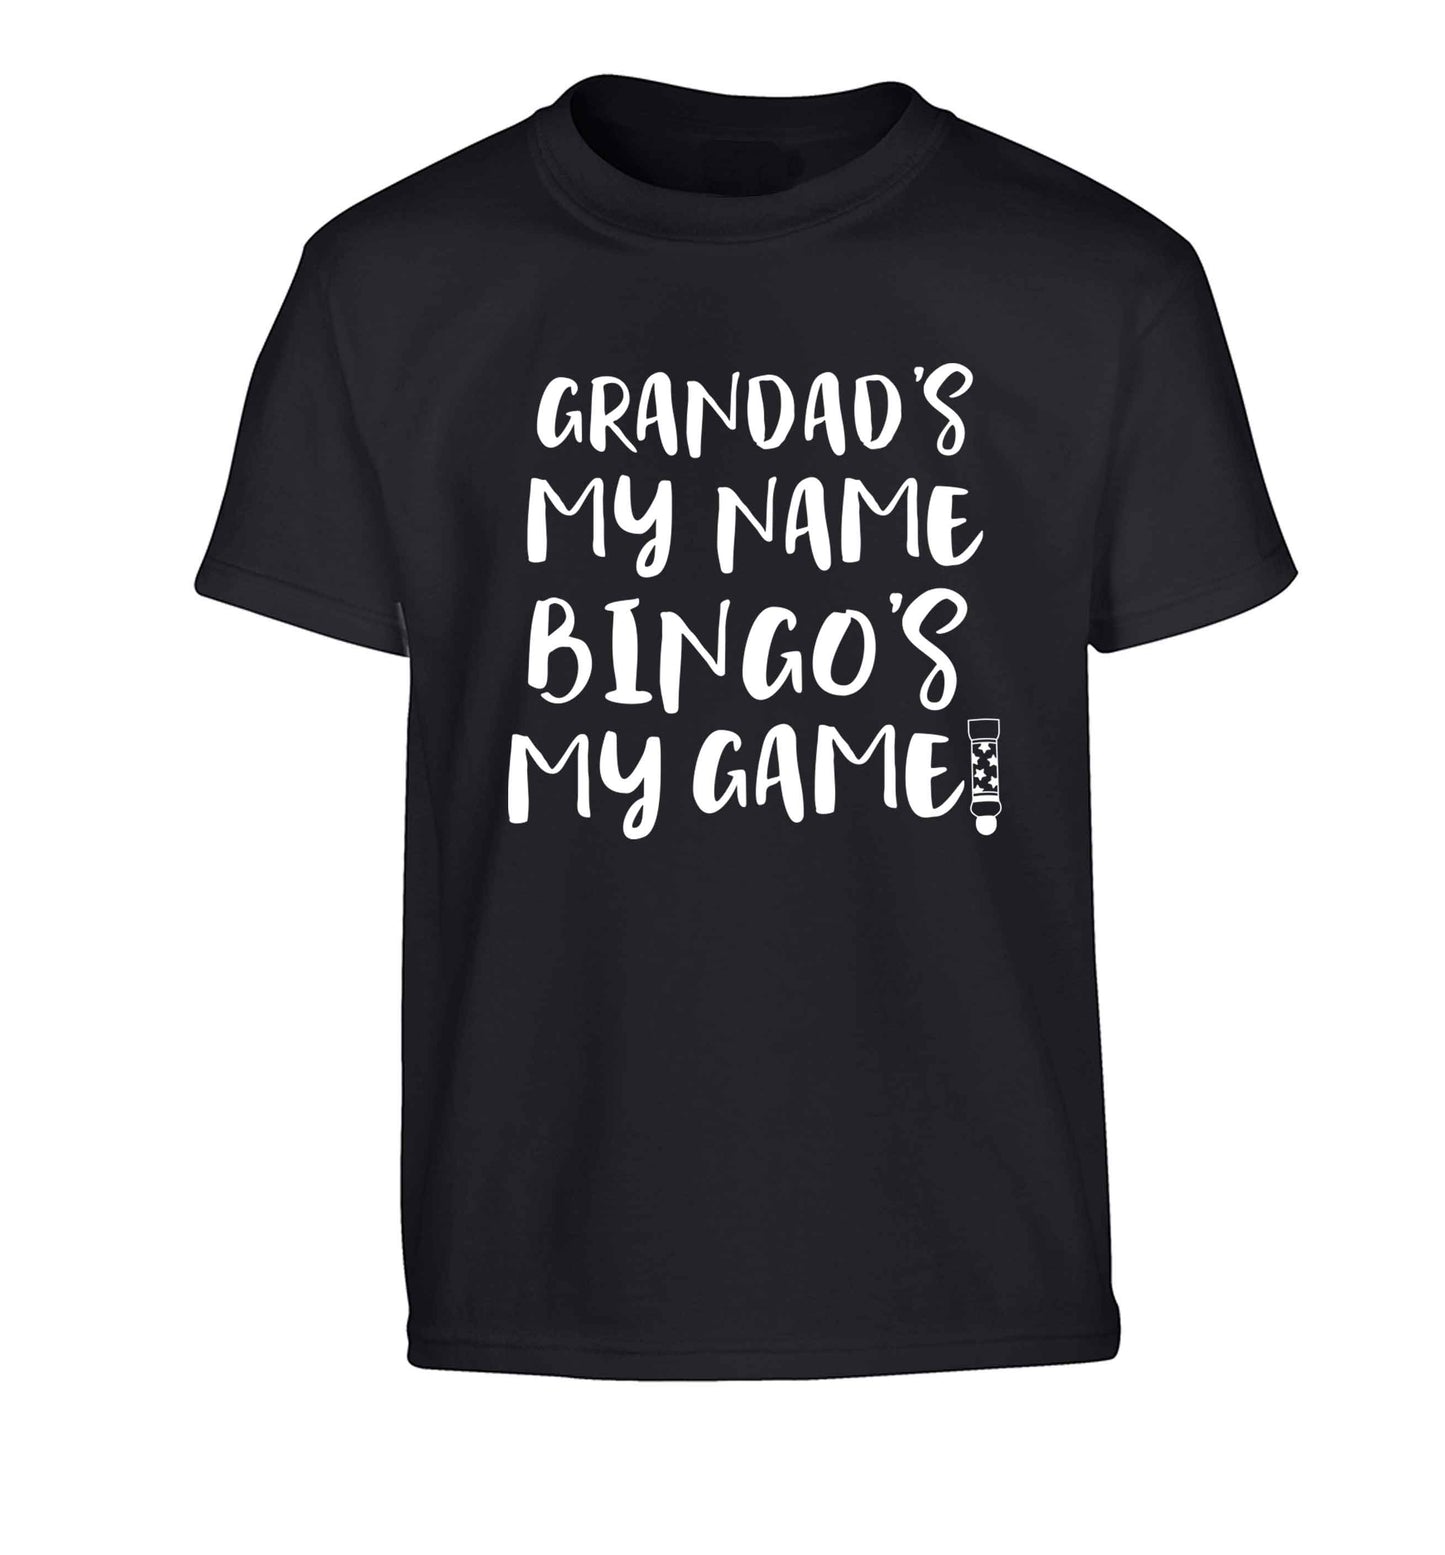 Grandad's my name bingo's my game! Children's black Tshirt 12-13 Years